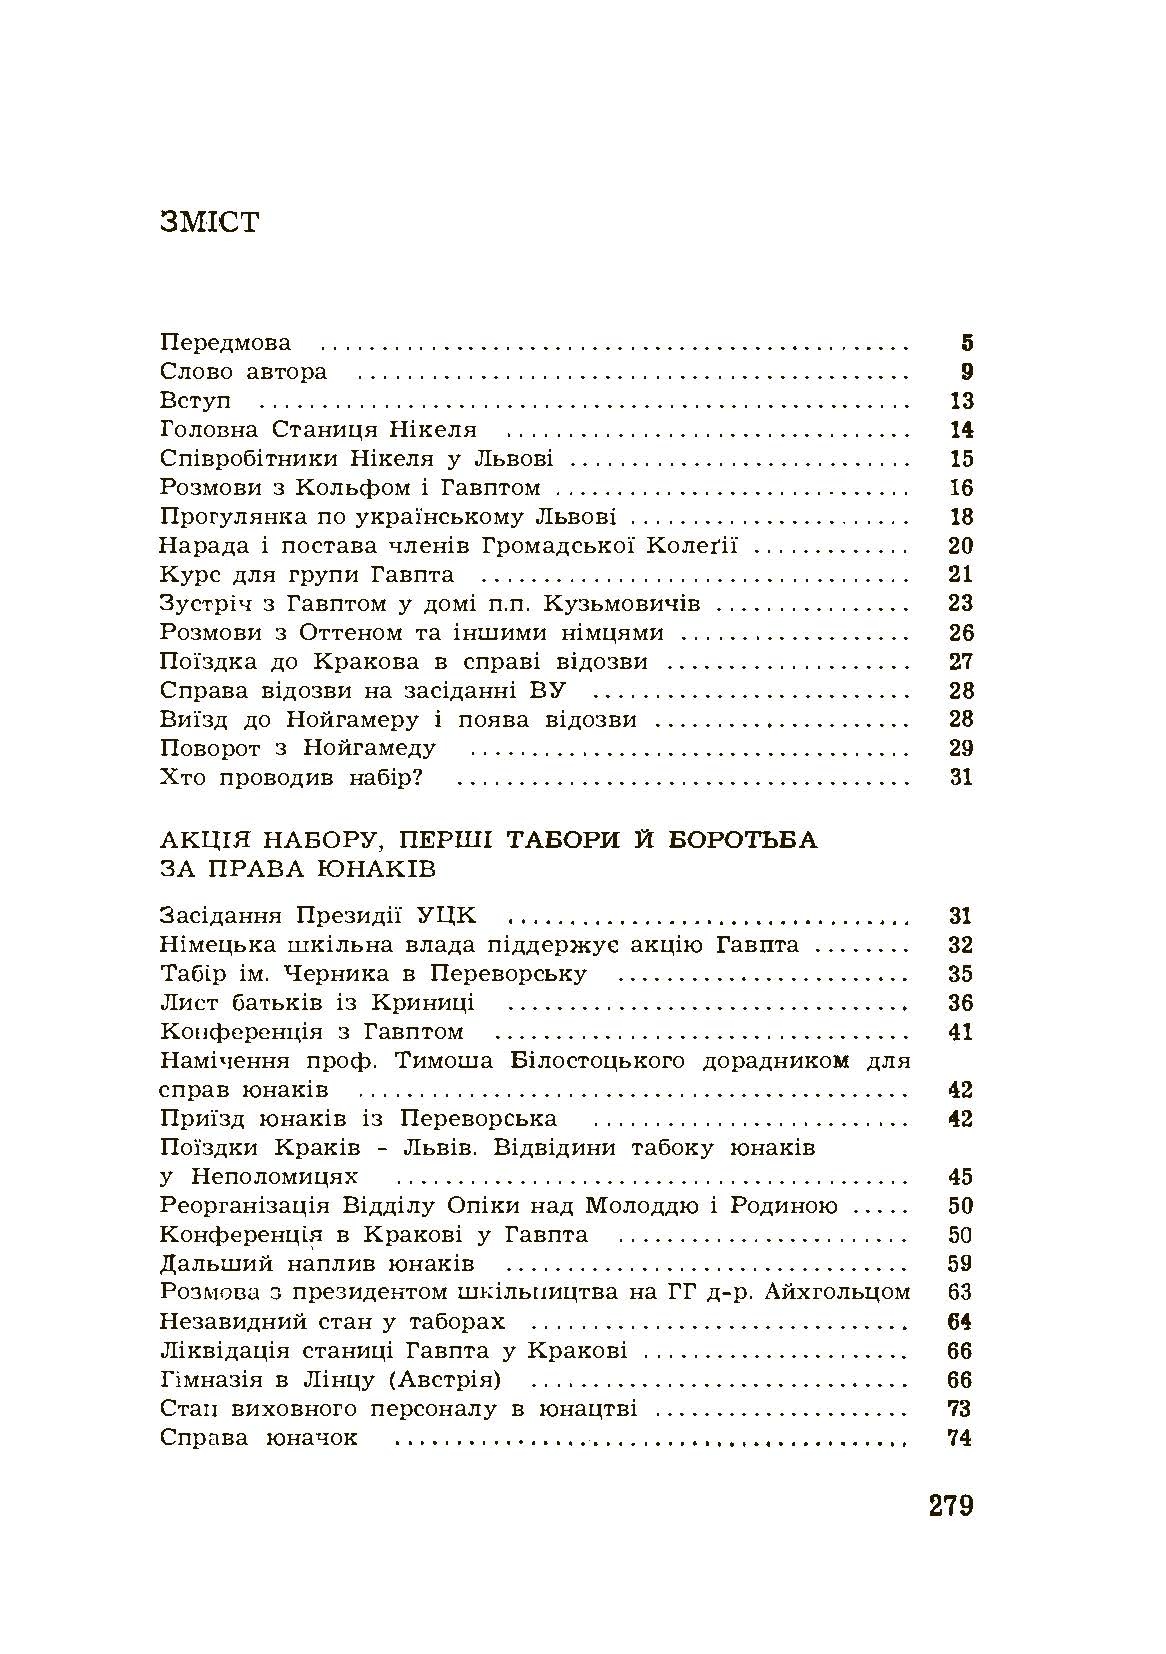 Українське юнацтво у вирі другої світової війни  (2020 год). Автор — Зелений Зенон. 